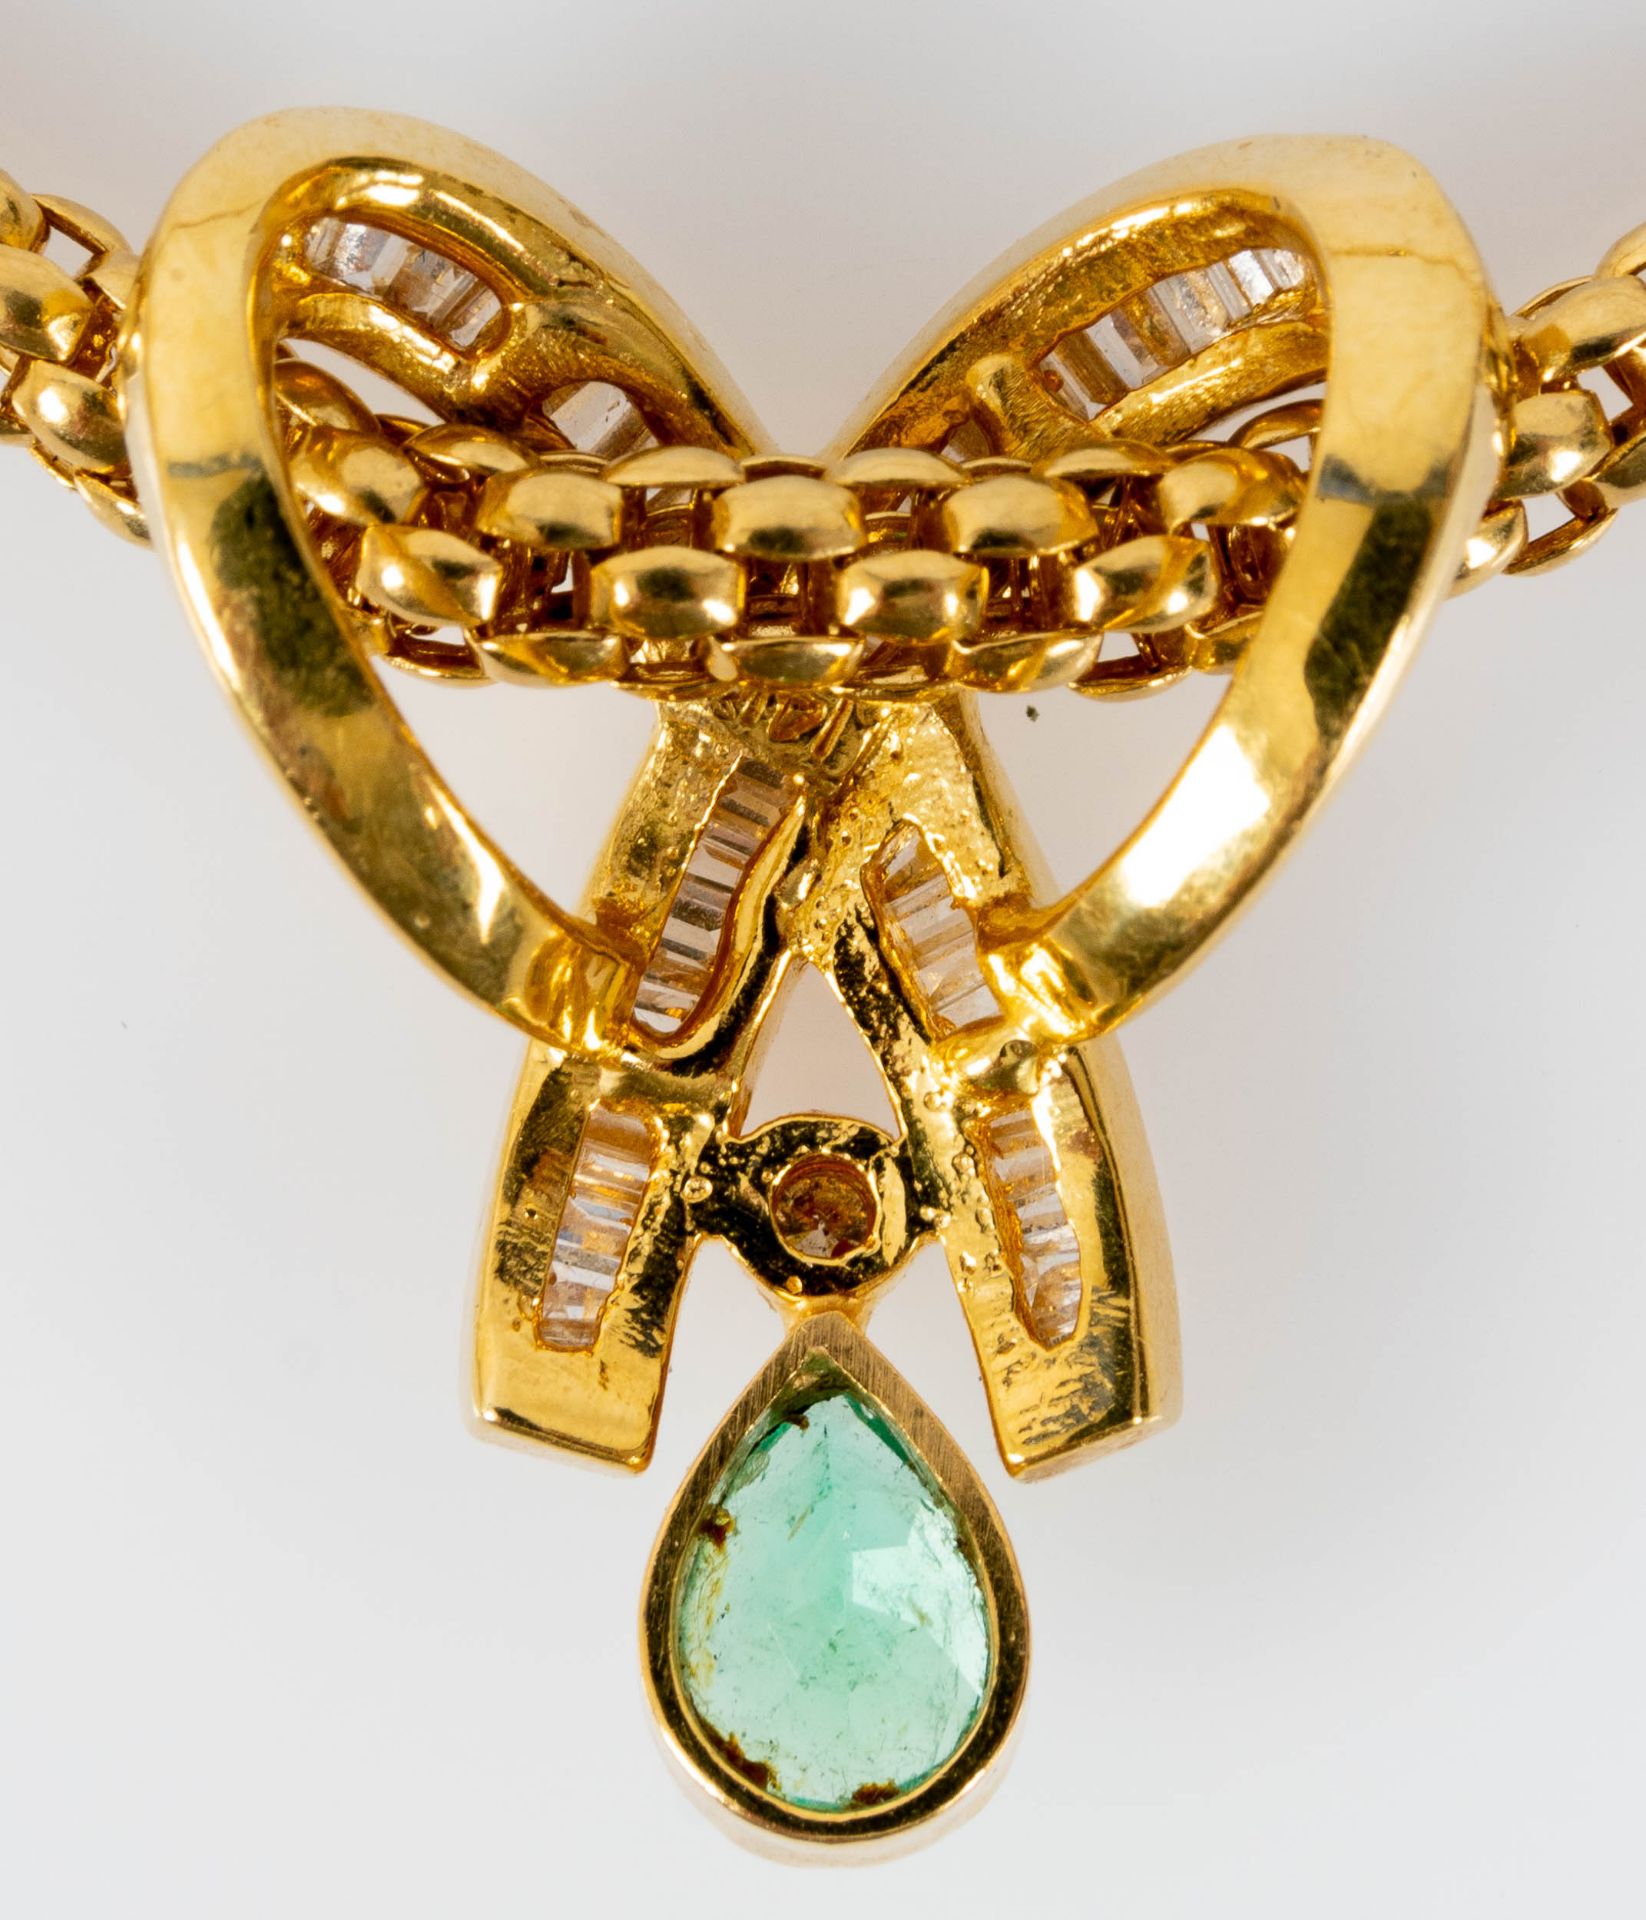 Prächtiges Smaragd-Brillant-Collier, bewegliche, ca. 46 cm lange tauförmige Halskette mit einer Bre - Image 7 of 10